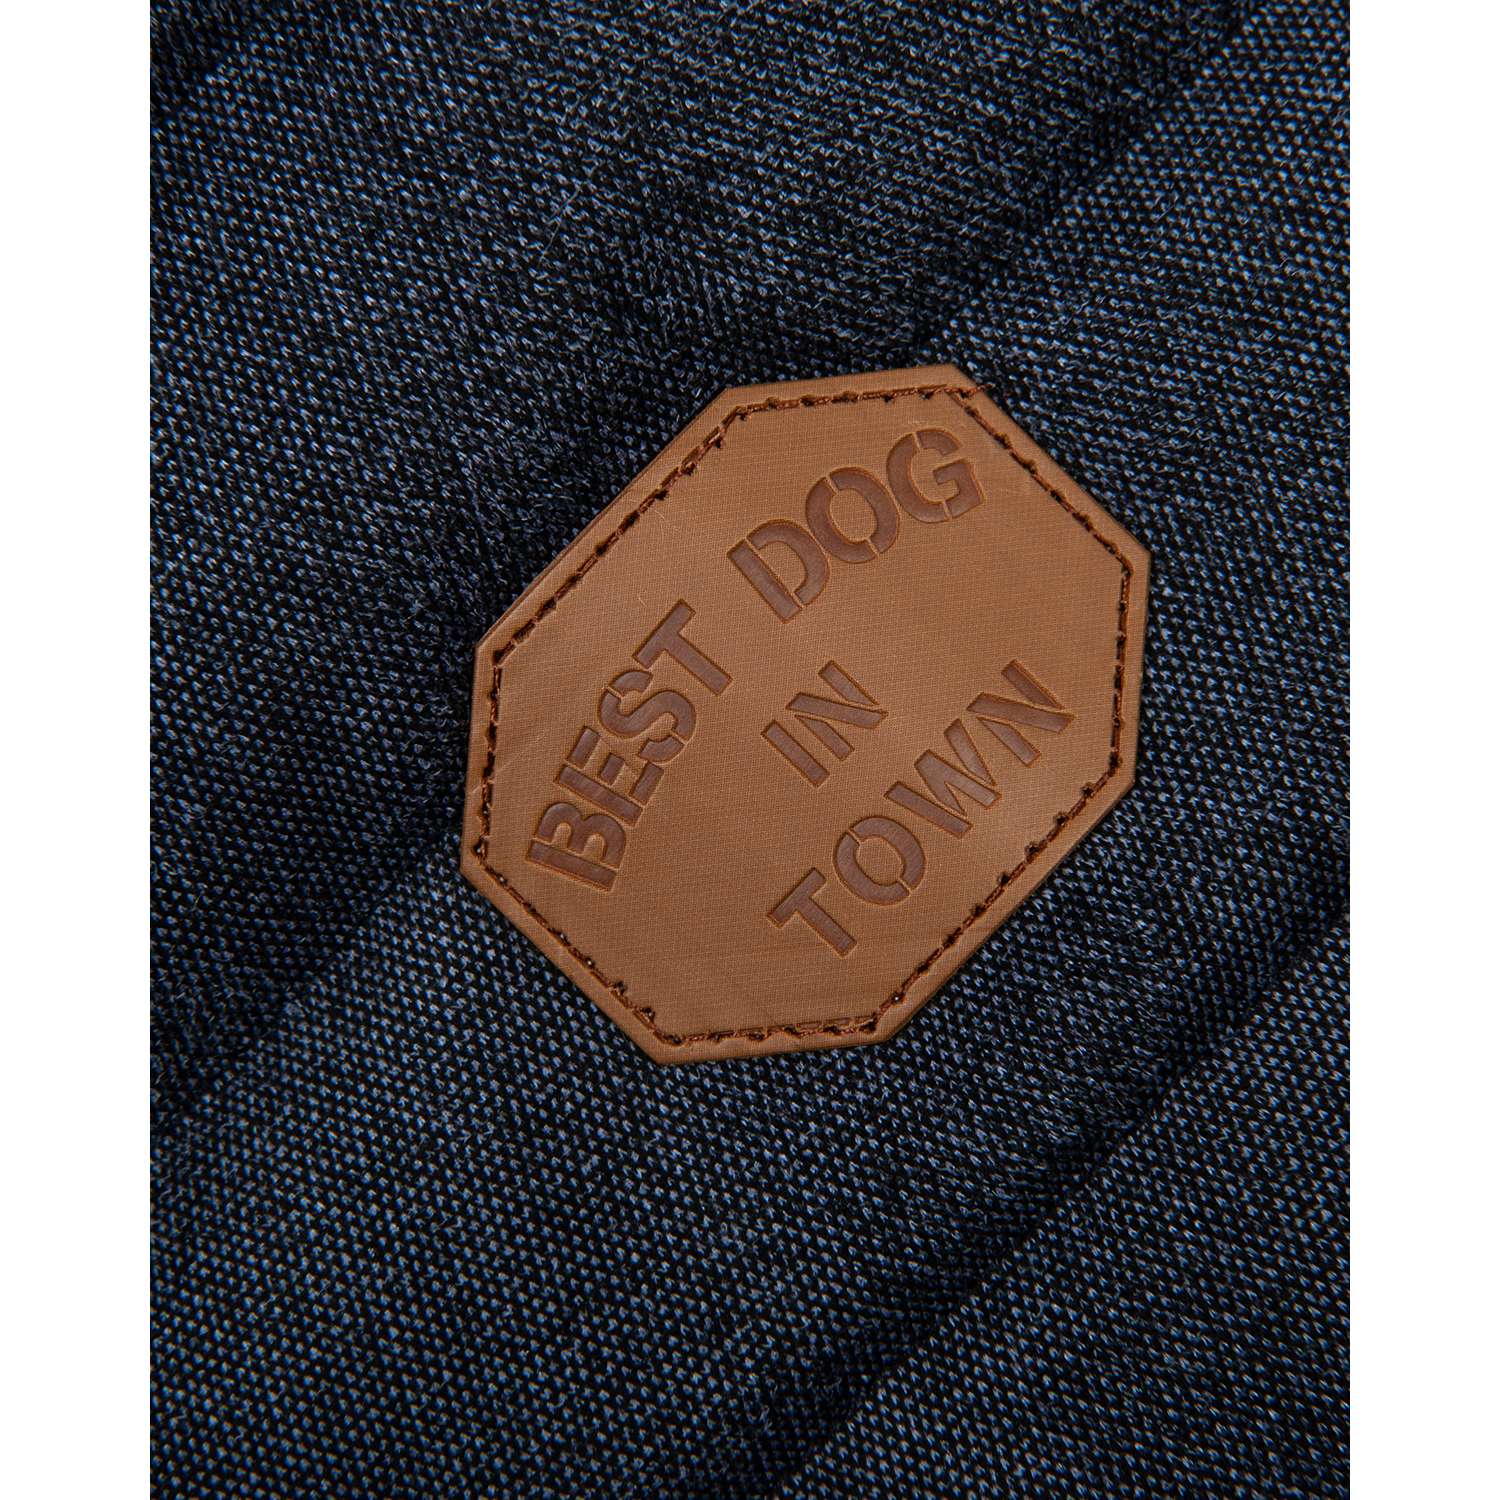 Куртка для собак Зоозавр тёмно-синяя 45 - фото 3